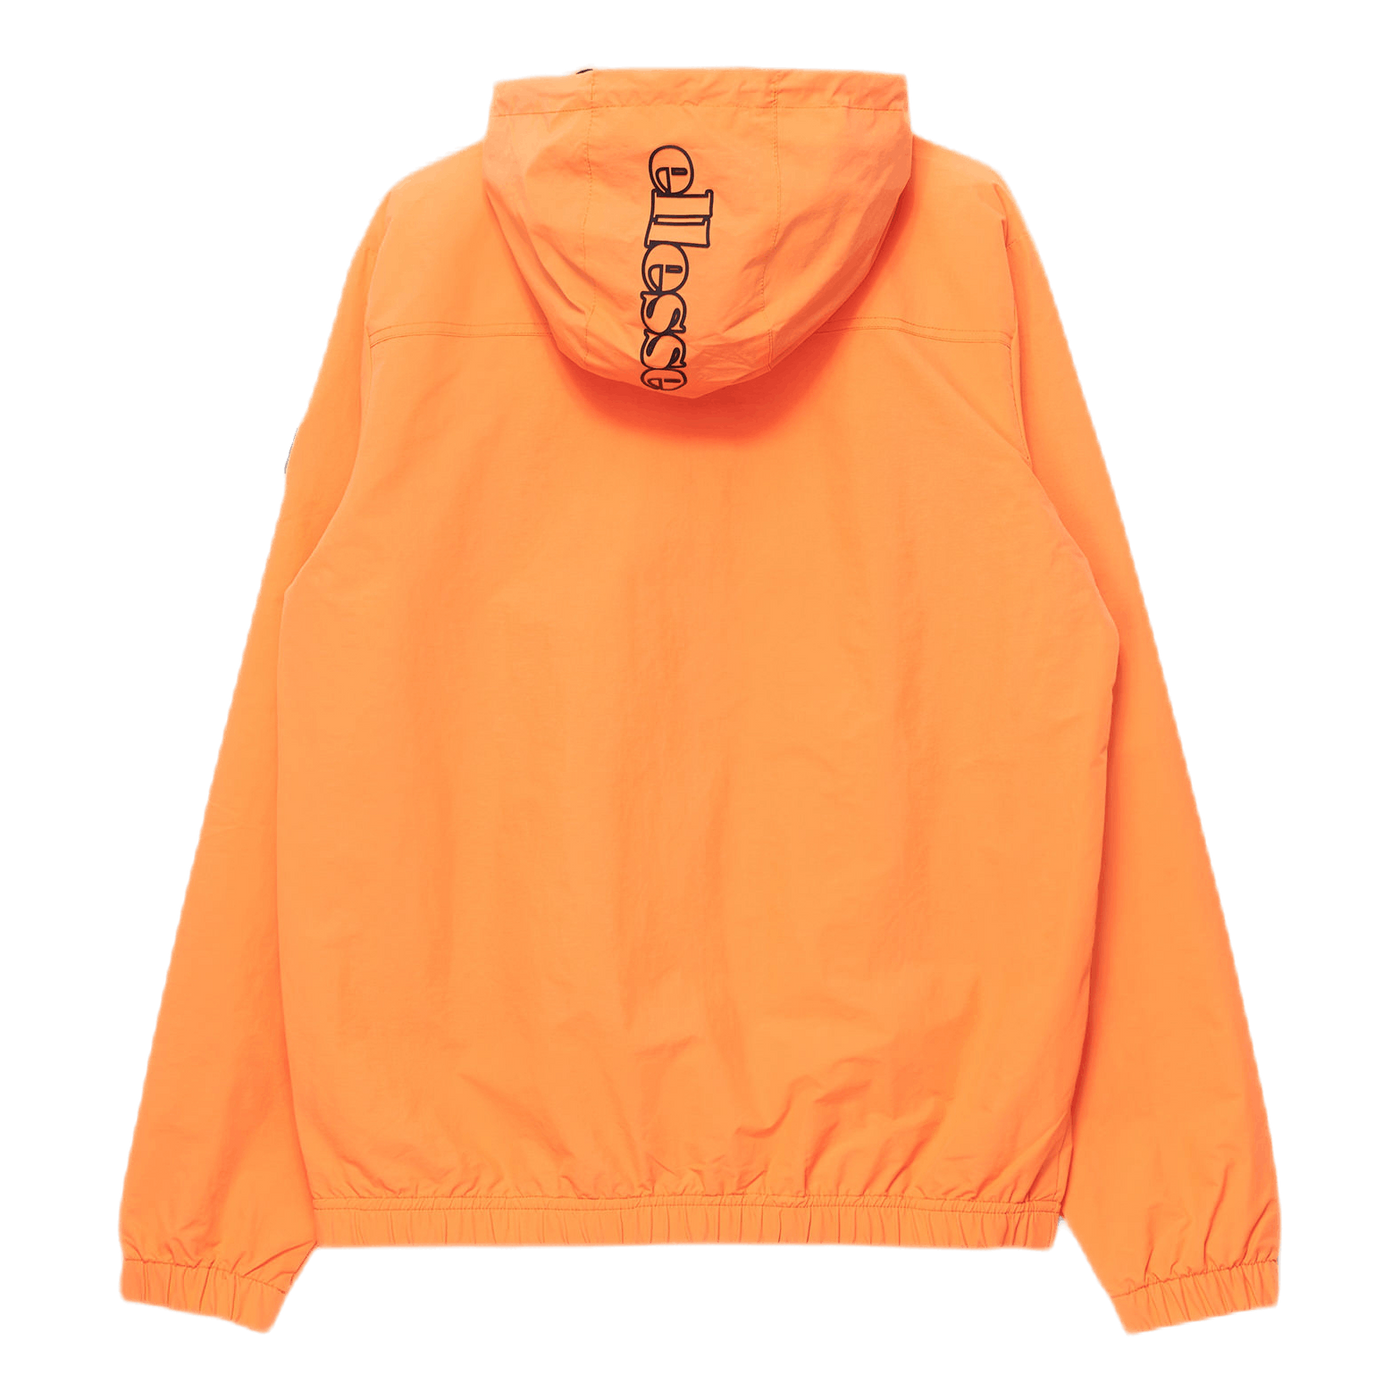 Marinio Jacket Orange